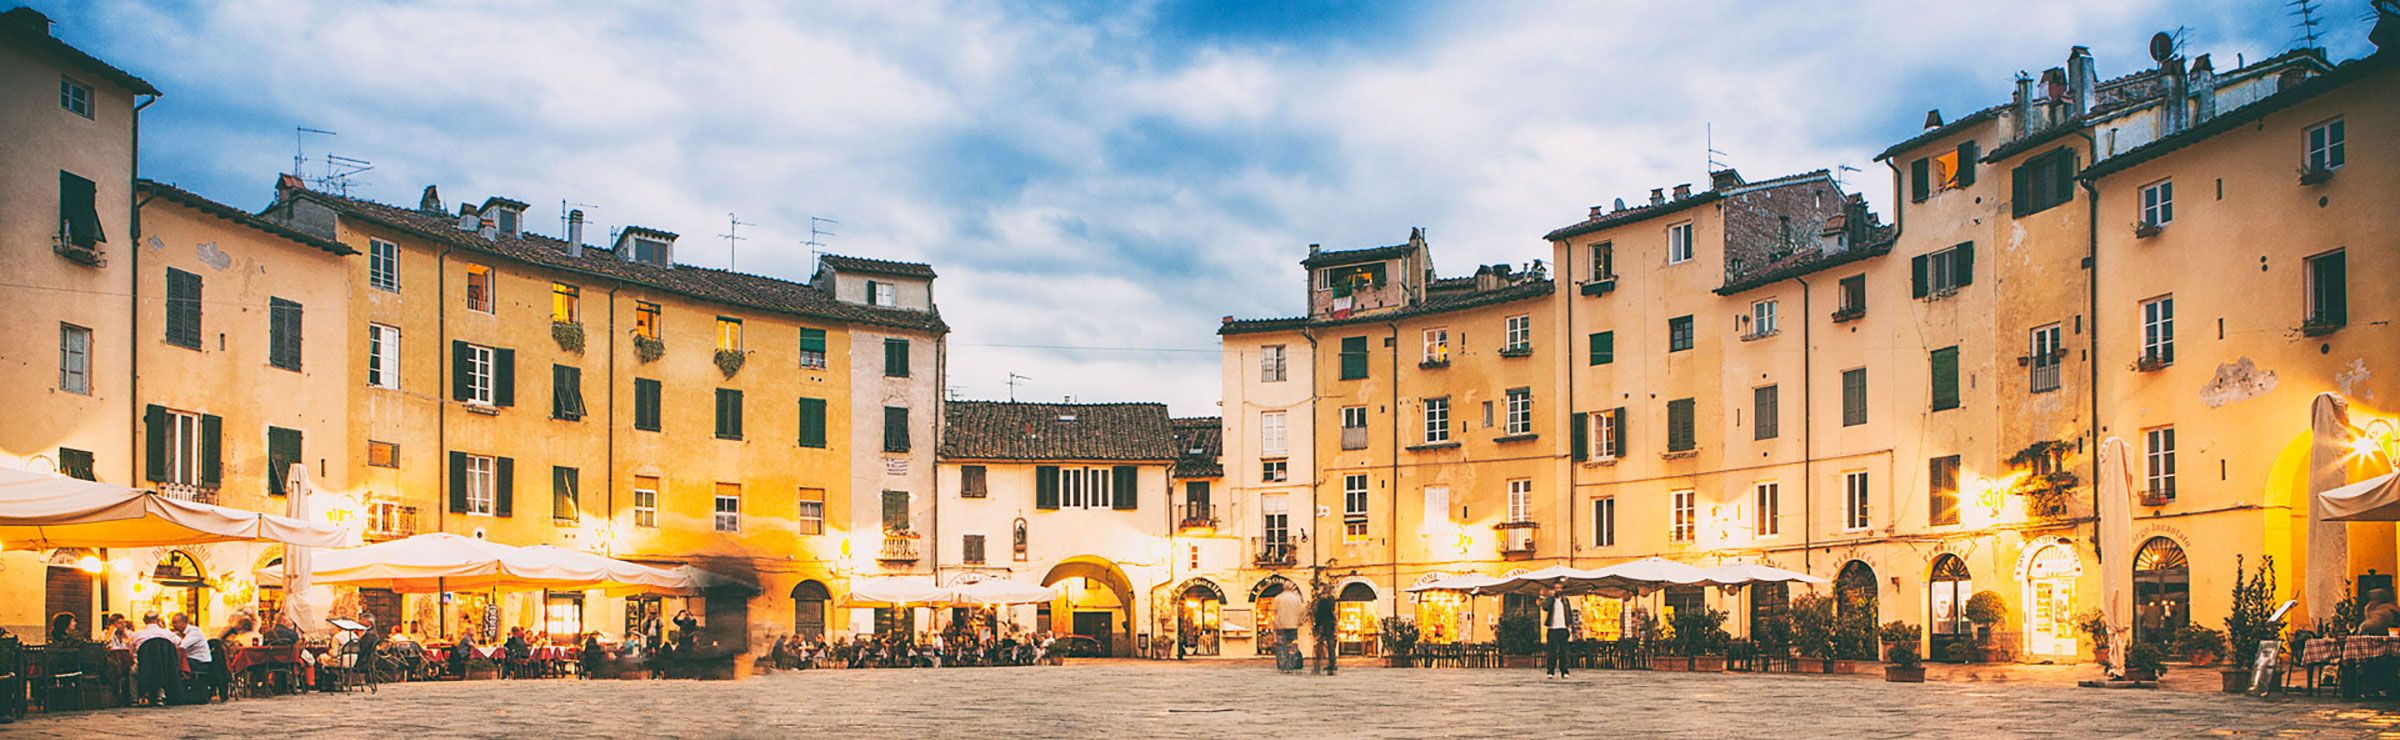 Informazioni utili per partecipare ai nostri corsi sul vino a Lucca - Hotel San Luca Palace